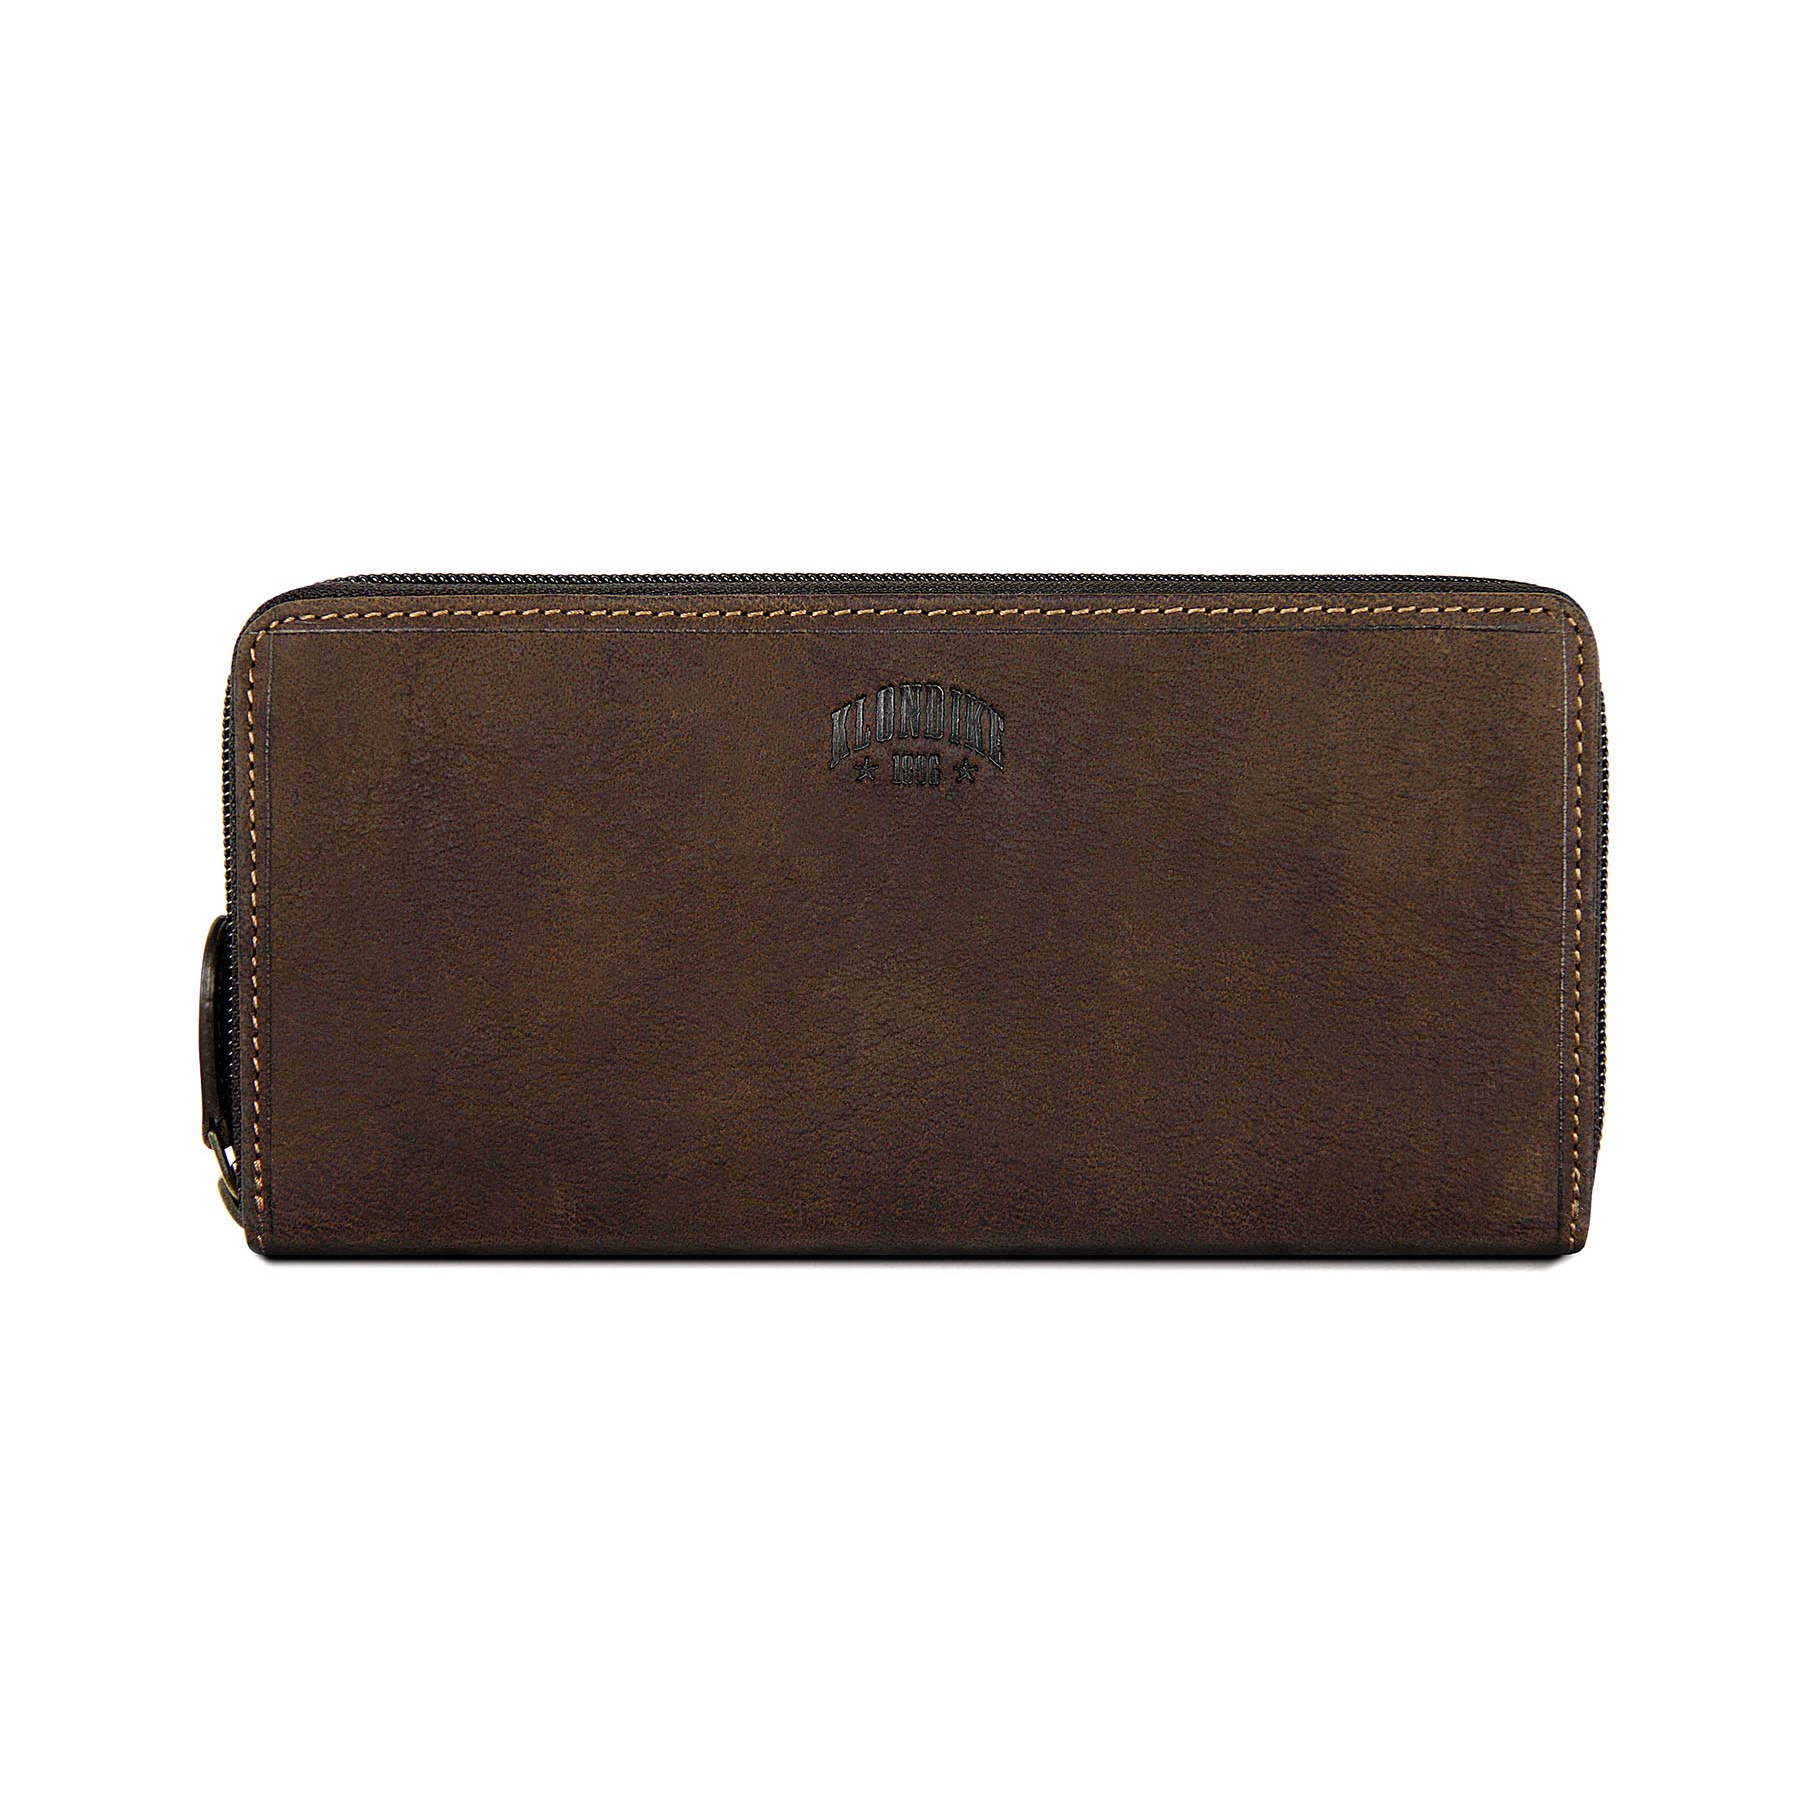 Бумажник Klondike Mary, коричневый, 19,5x10 см